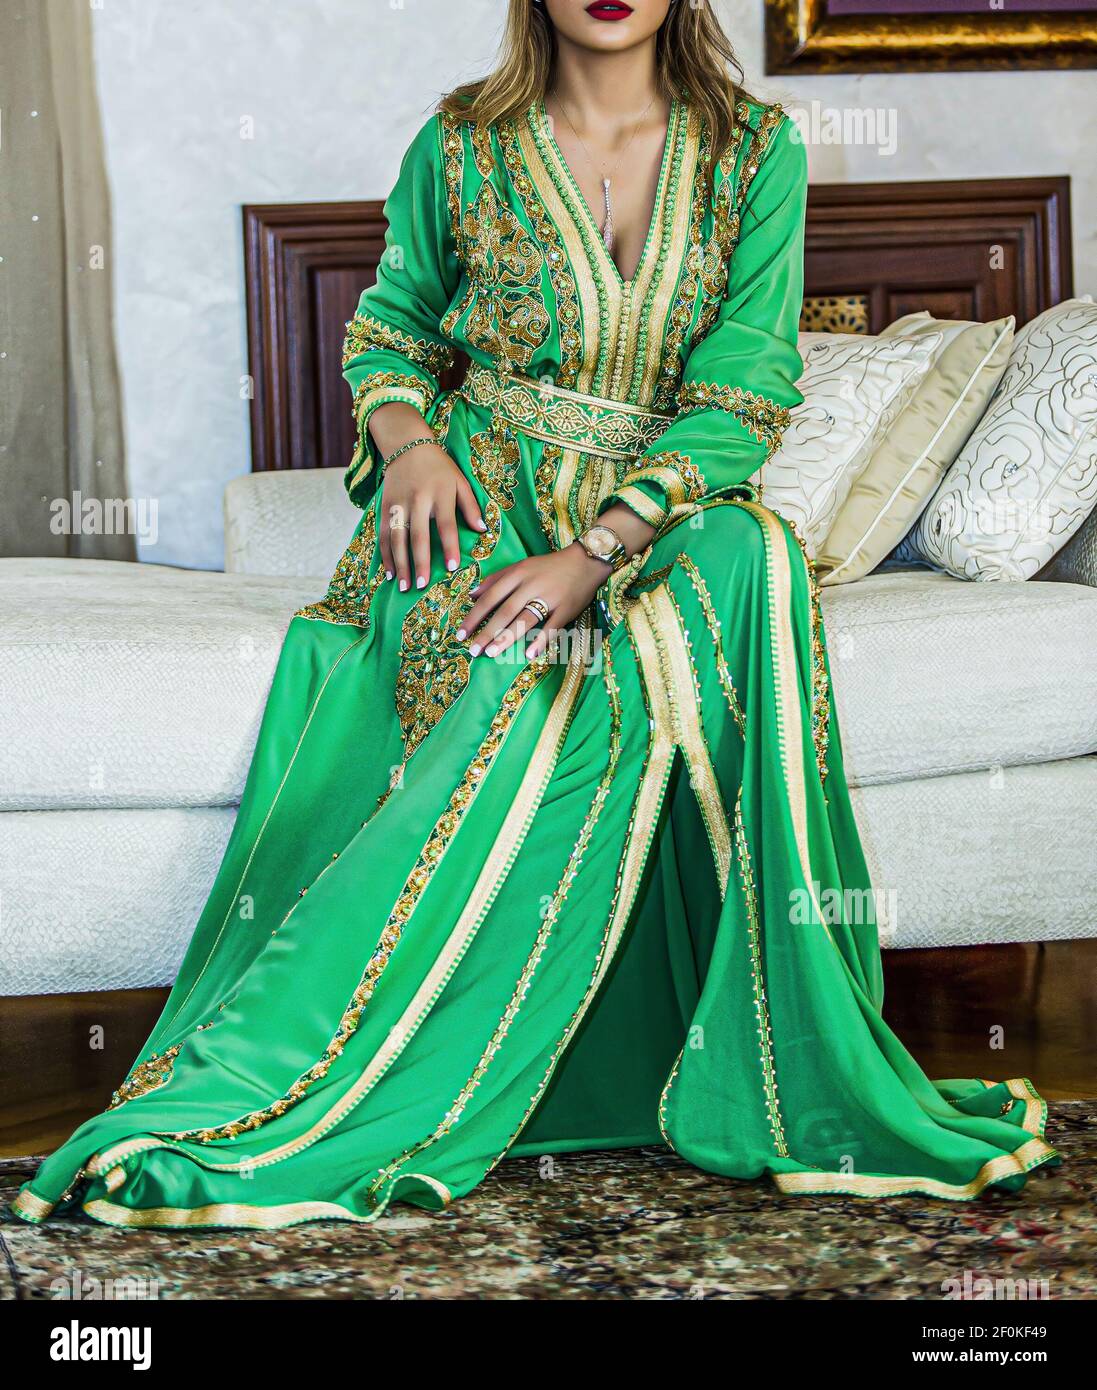 Traditionelle marokkanische Kleidung. Ein Modell mit marokkanischem Kaftan.  Afrika-Kultur Stockfotografie - Alamy